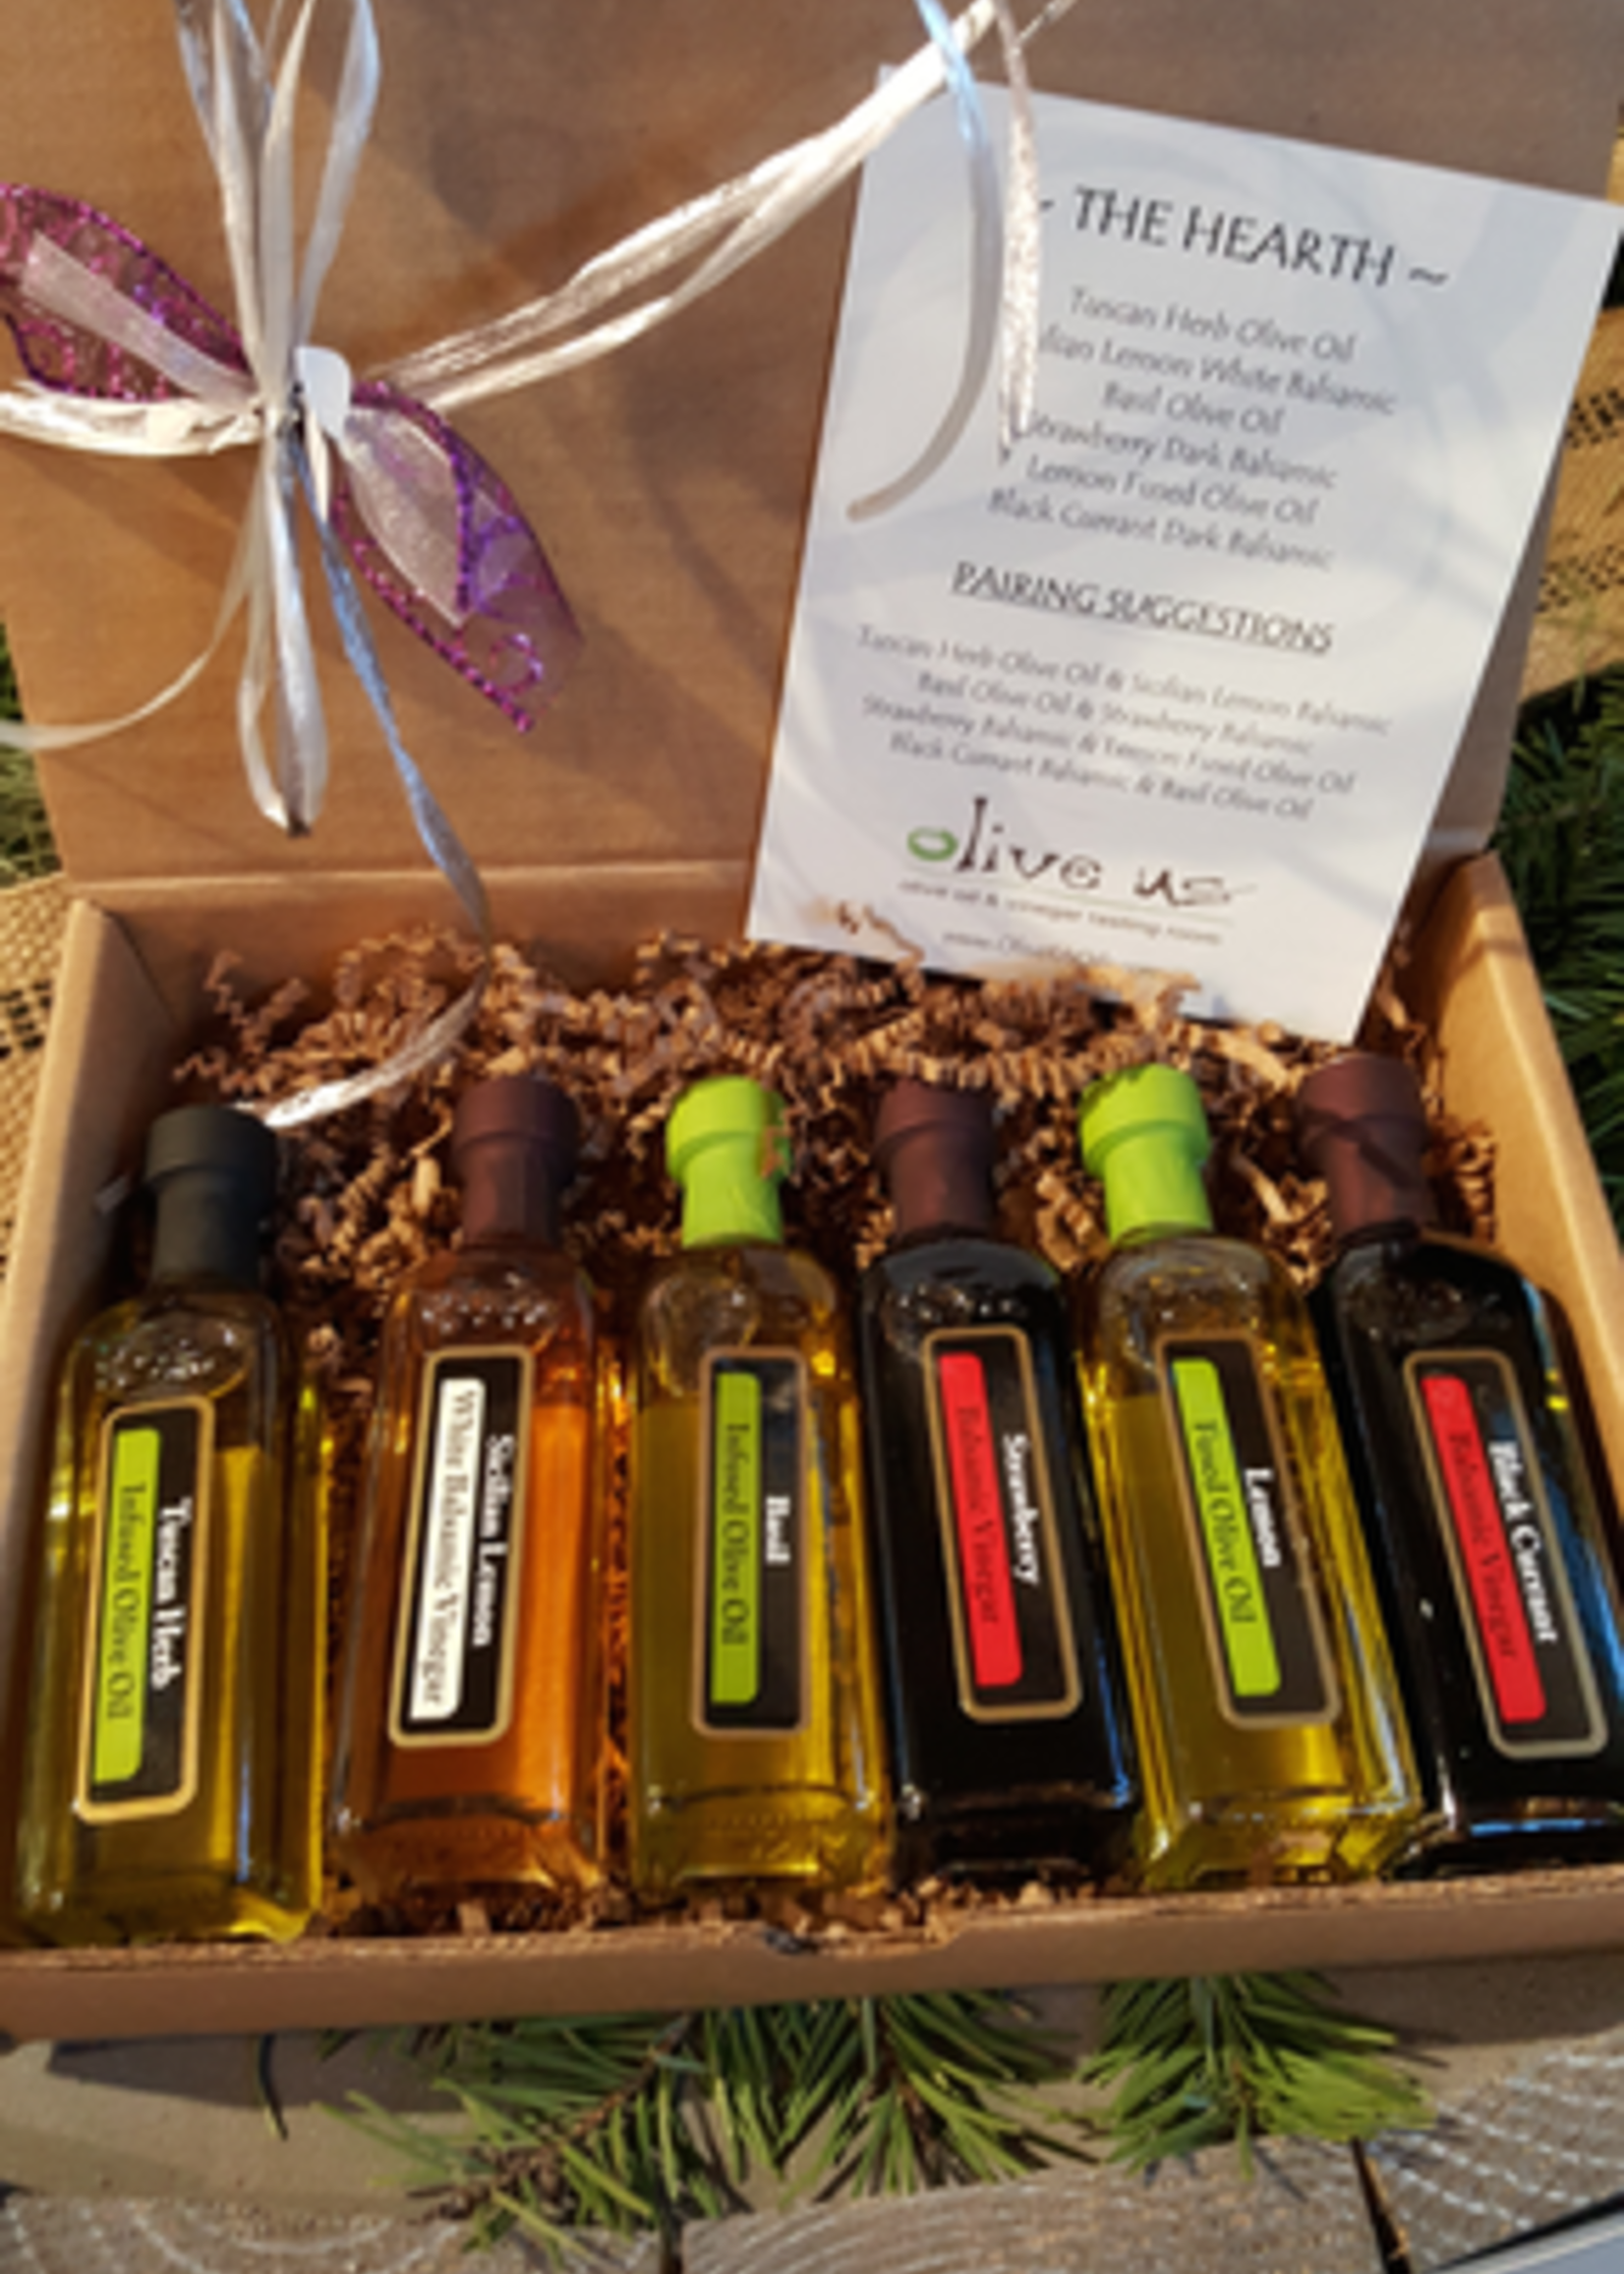 Olive Us Hearth 6 Pack 60ml - 3 Oil & 3 Vinegar